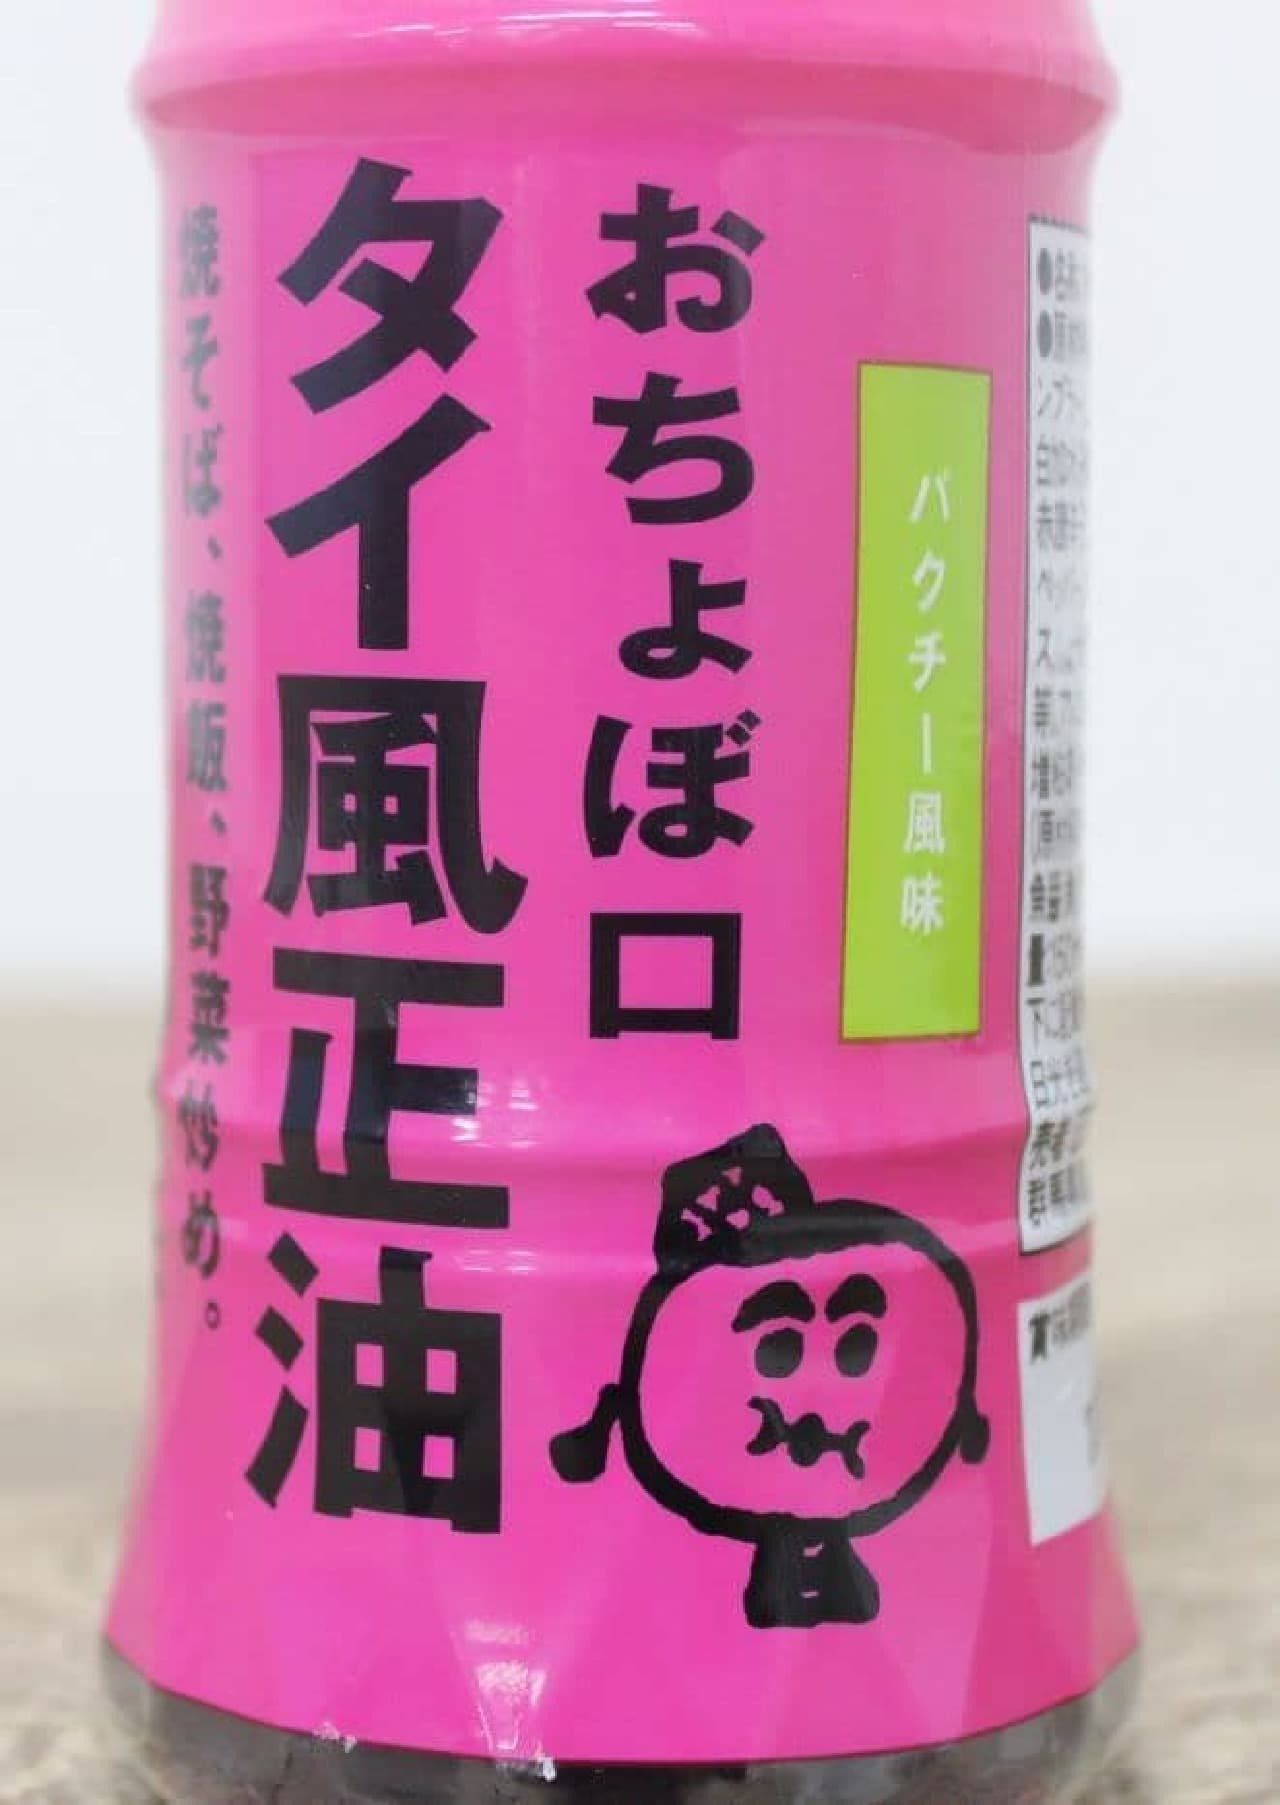 「おちょぼ口シリーズ」は、群馬県にある老舗調味料メーカー正田醤油から販売されている商品